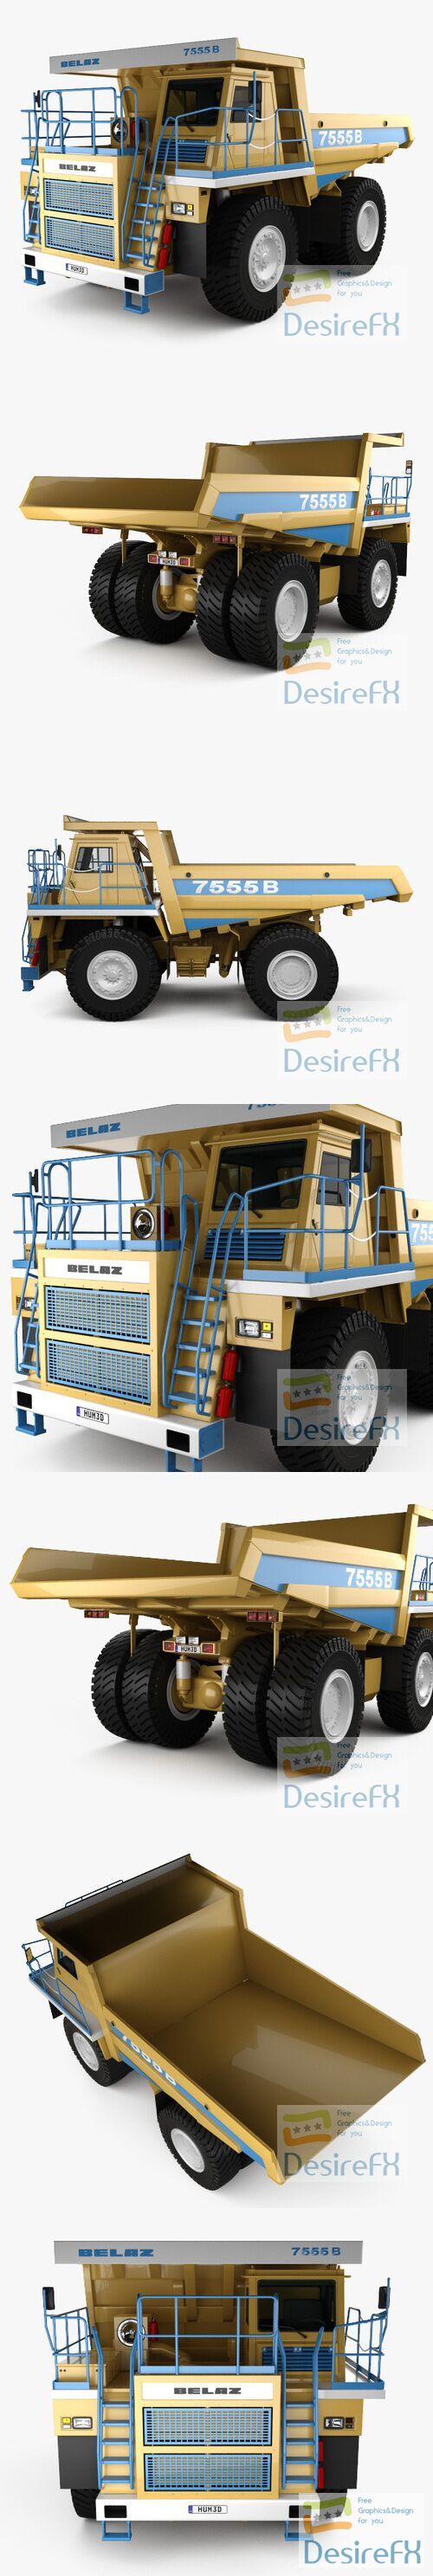 BelAZ 7555B Dump Truck 2016 3D Model